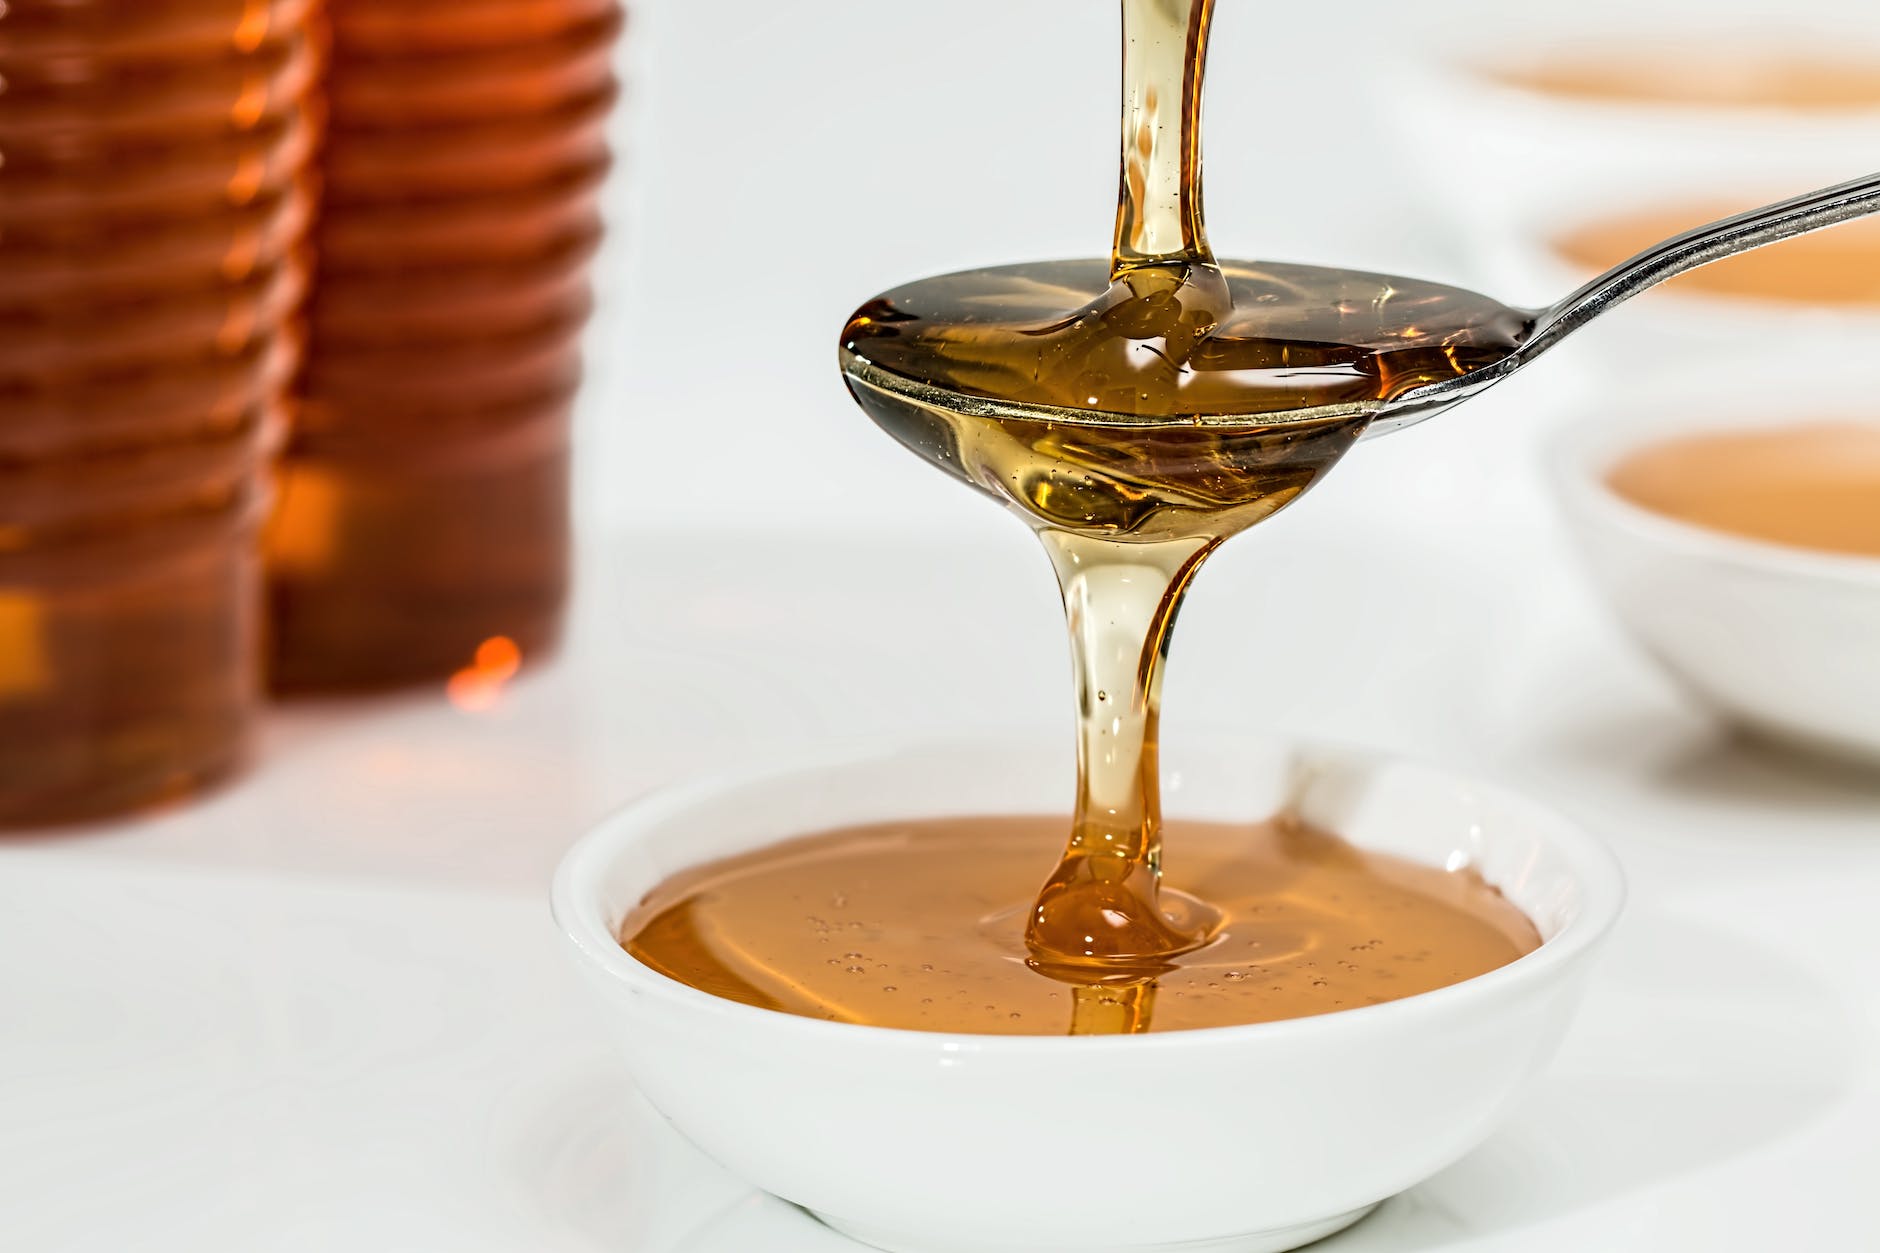 शहद (Honey) की तासीर कैसी होती है – ठण्डी या गरम